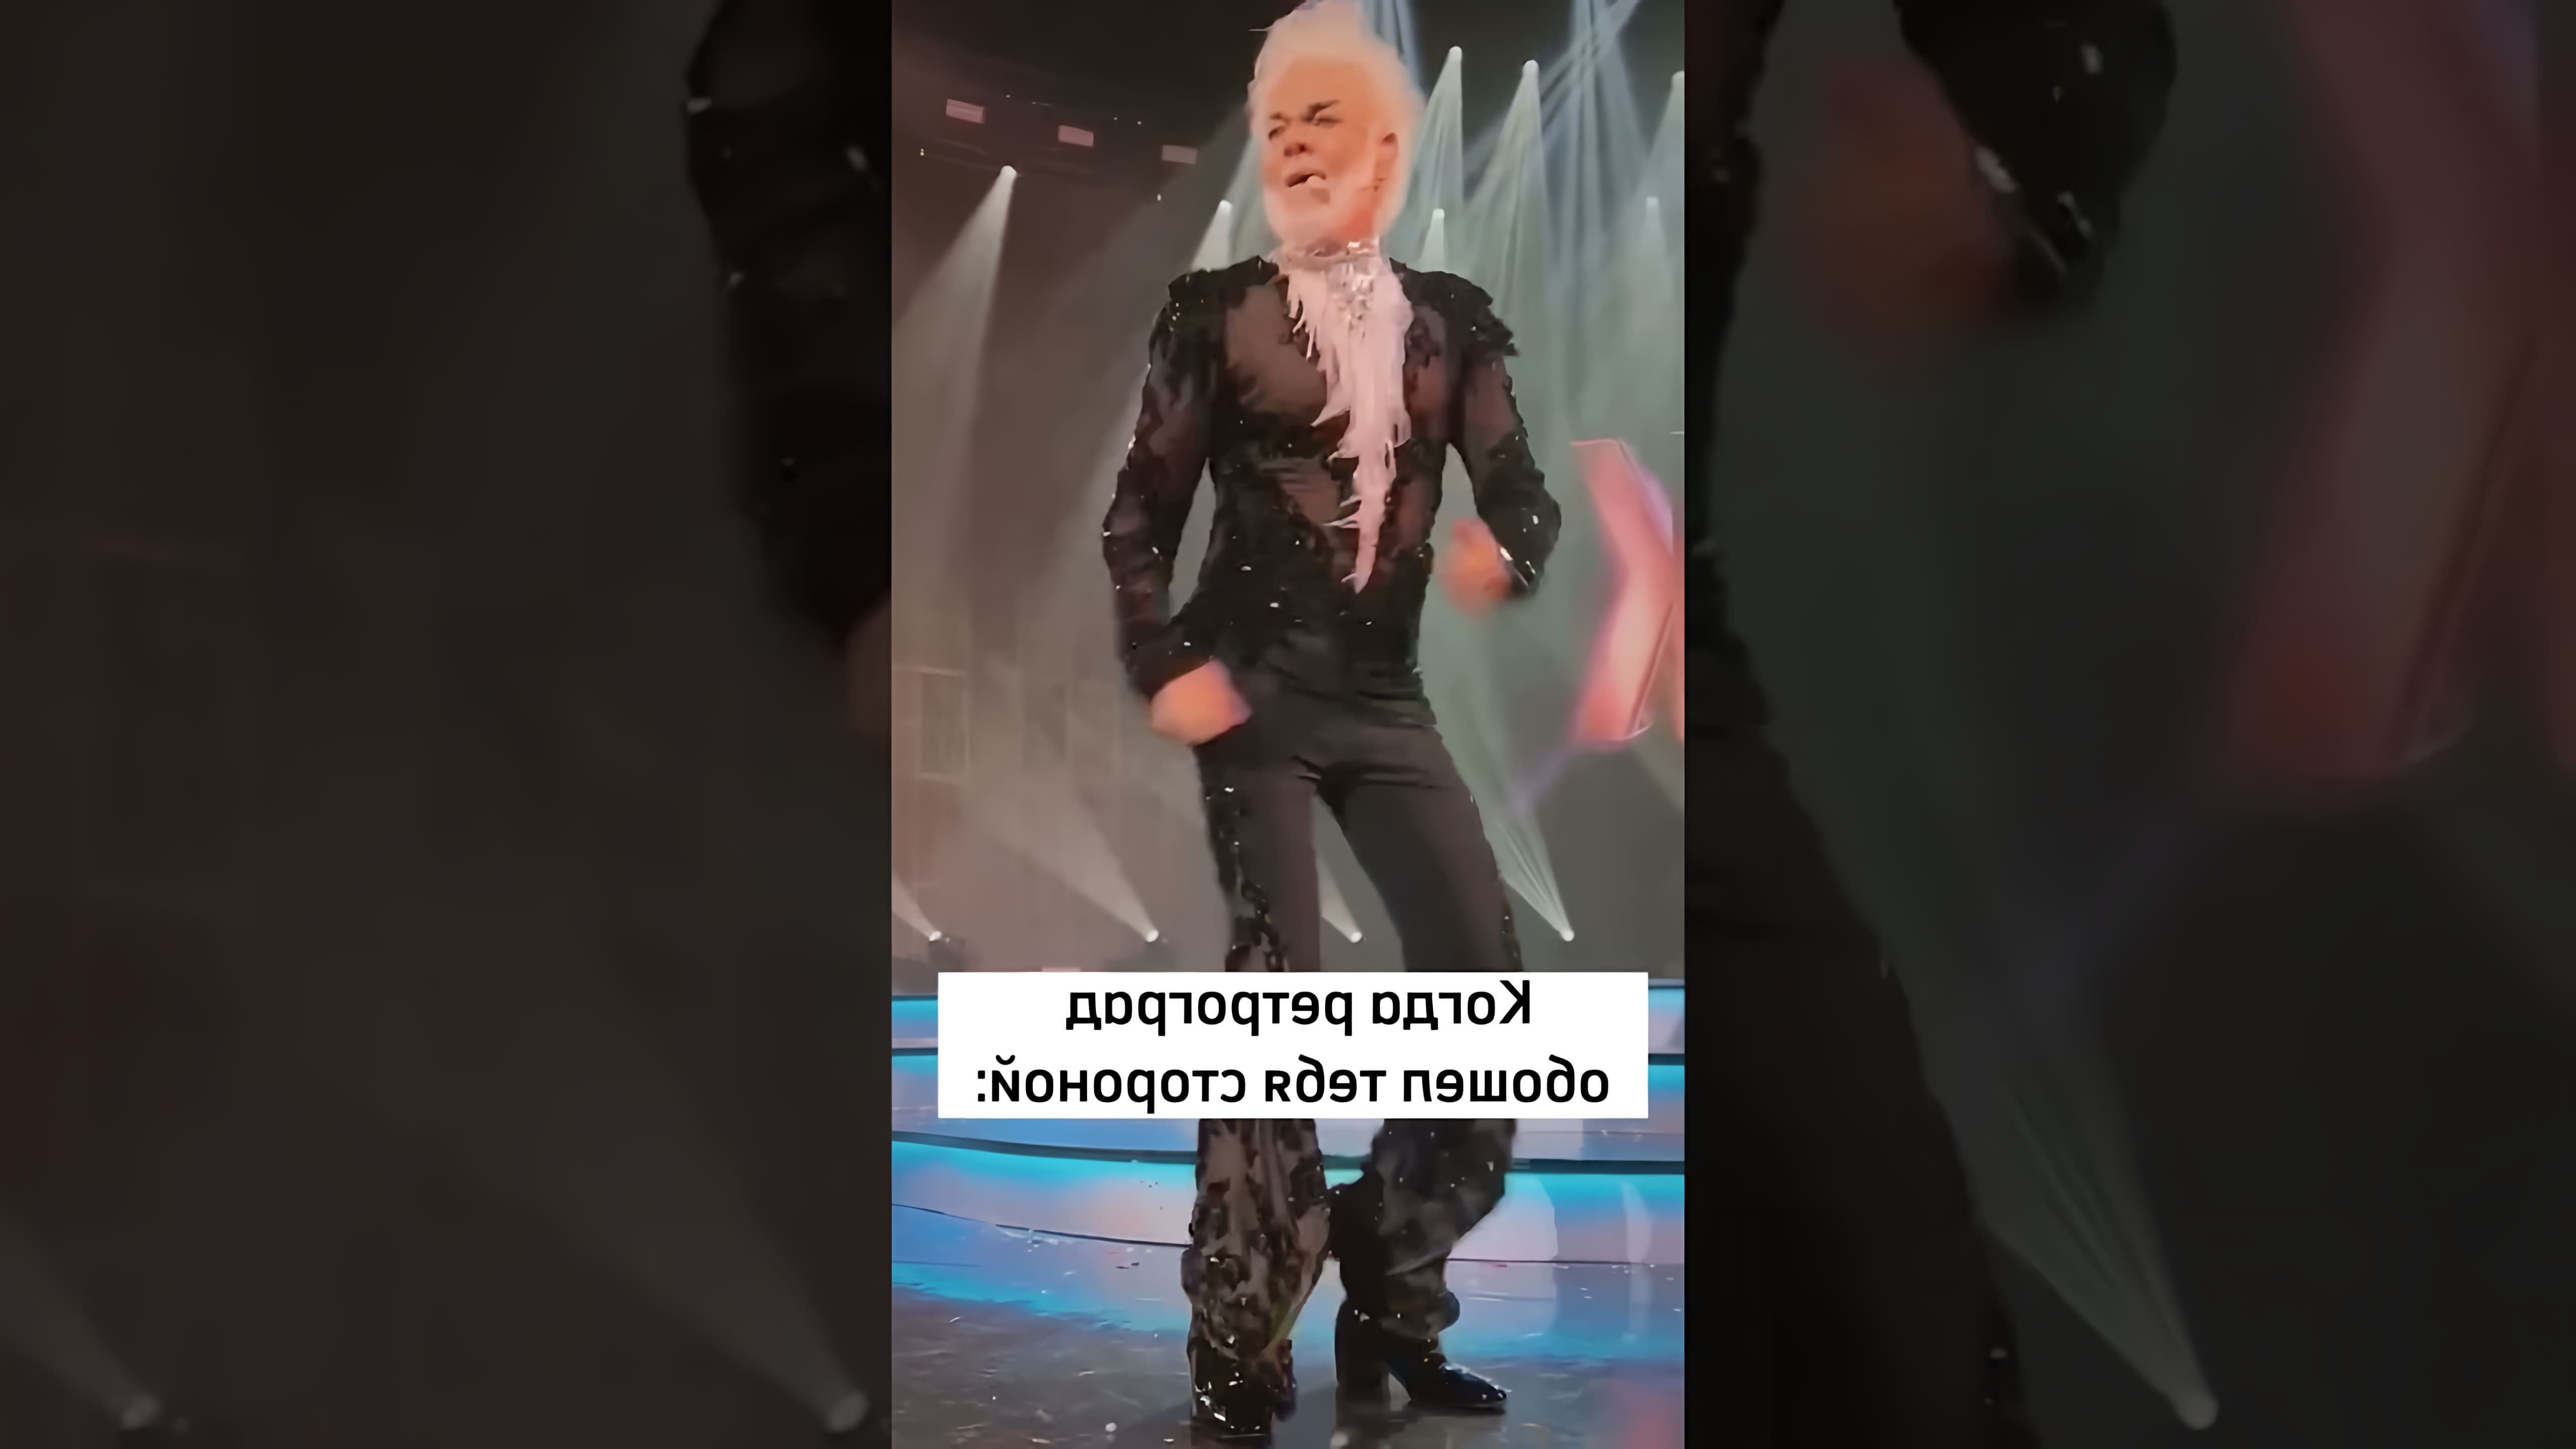 Филипп Киркоров - известный российский певец и актер, который славится своими зажигательными танцами